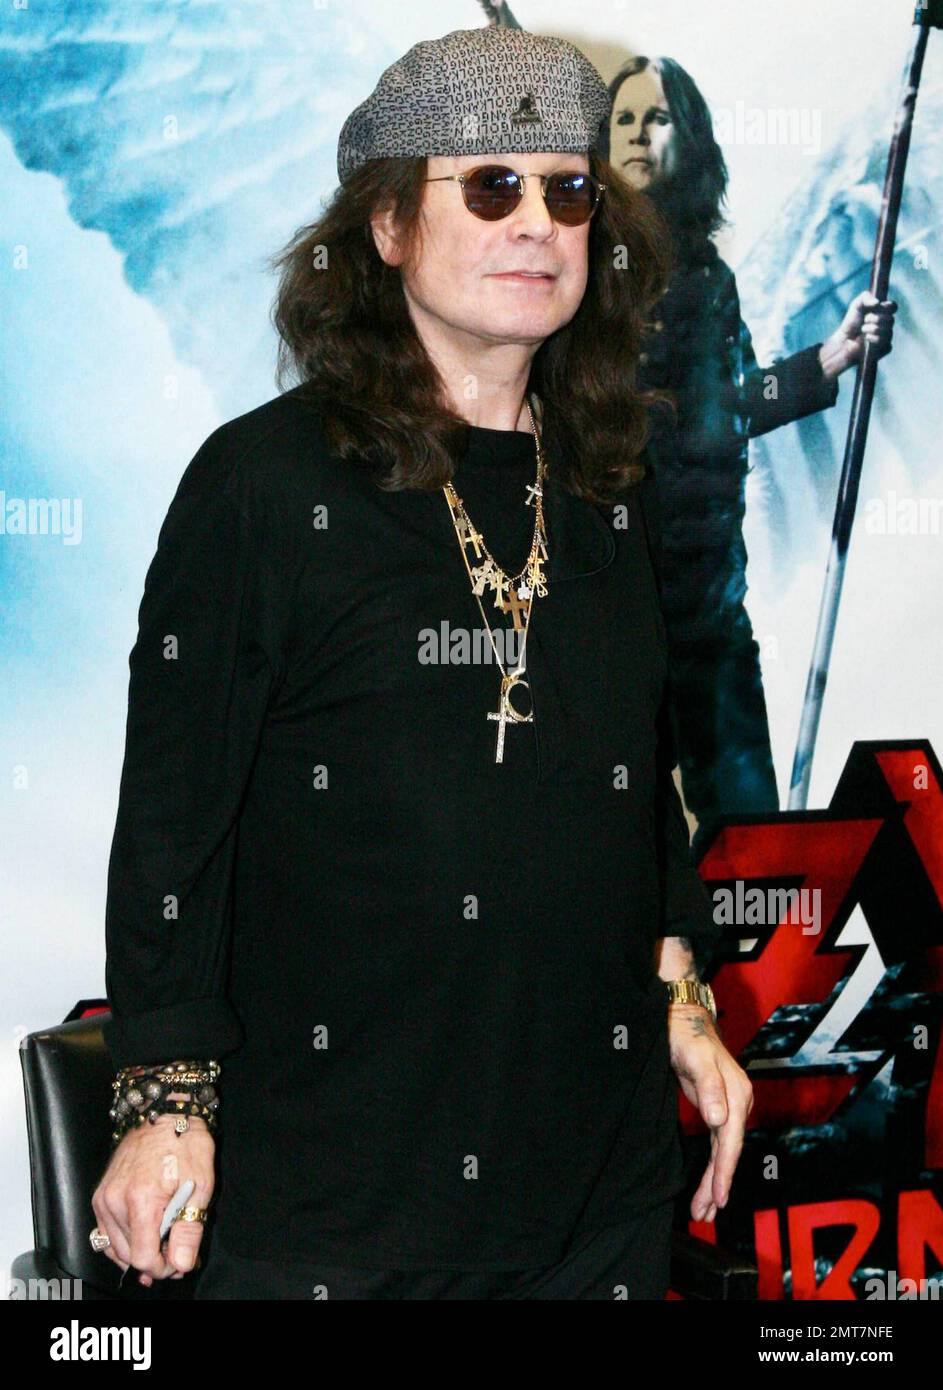 Le légendaire musicien de rock Ozzy Osbourne pose avec son dernier album  'Scream', son onzième disque solo, au magasin de musique Amoeba pour  célébrer sa sortie. Les fans ont été vus s'aligner